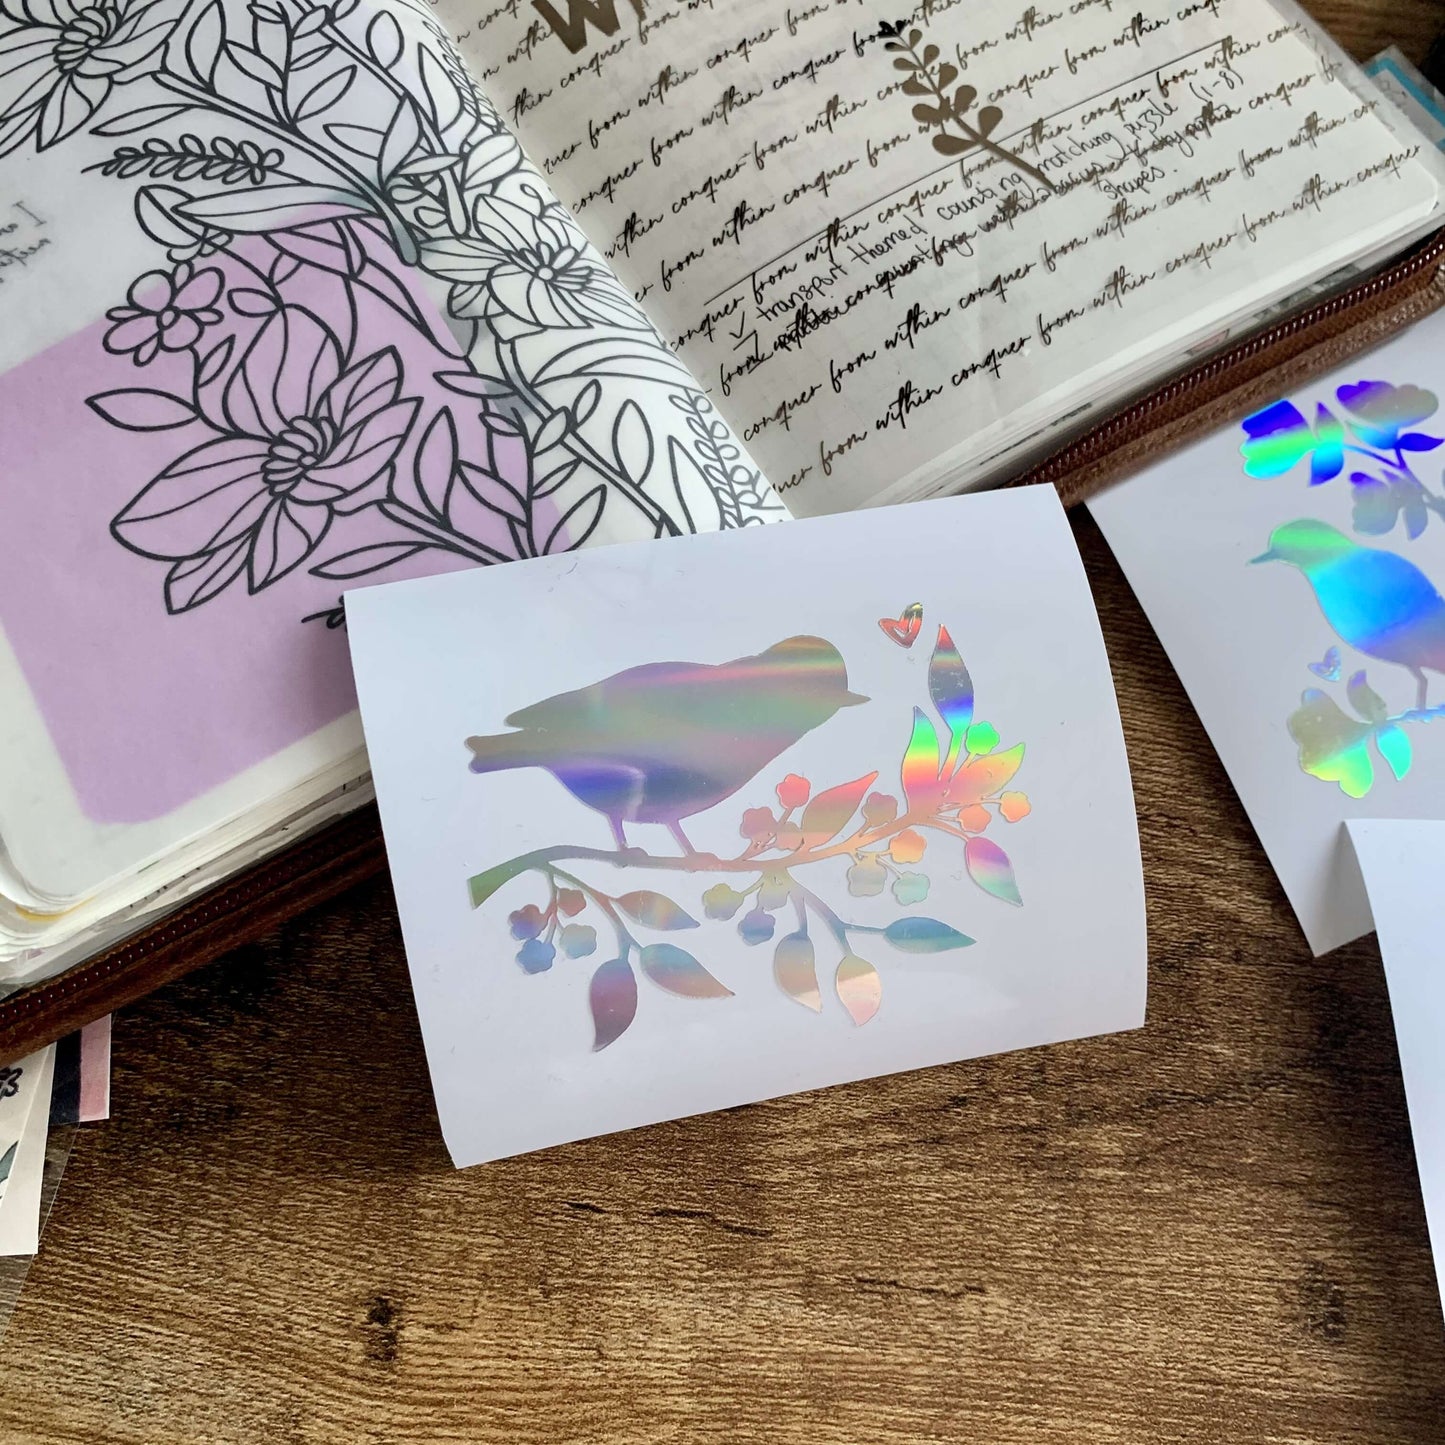 Holographic Bird Vinyl Decal Sticker - Bird A 🐦 - Tropical Paradise Collection